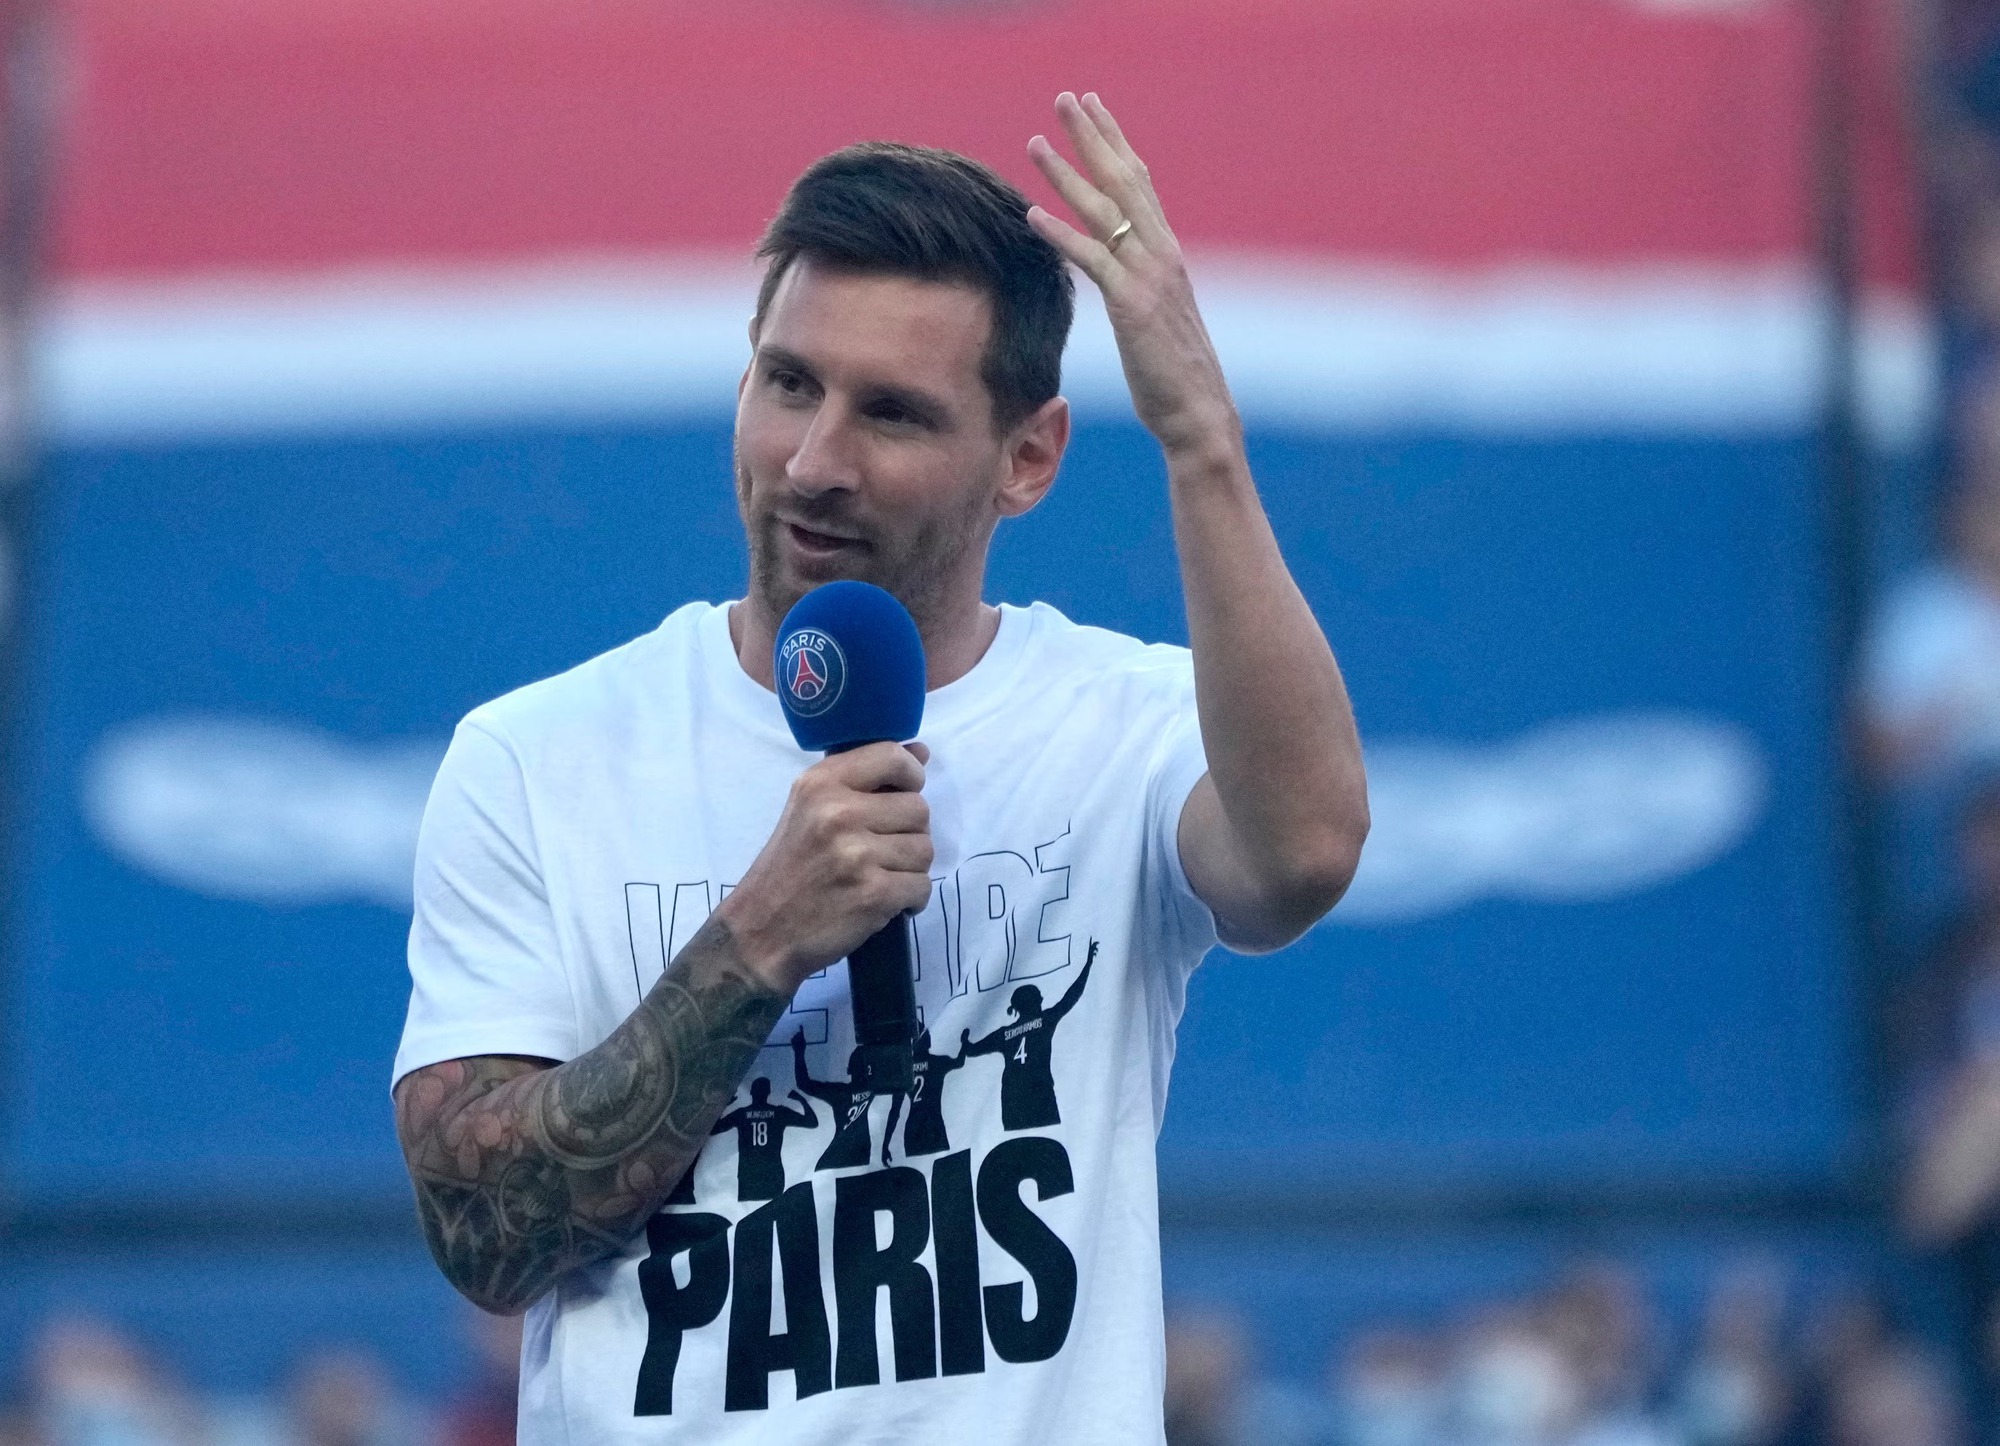 Lionel Messi kiếm hàng nghìn tỷ từ hình ảnh thương hiệu: Đóng phim, quay MV chỉ chiếm một phần nhỏ - Ảnh 1.